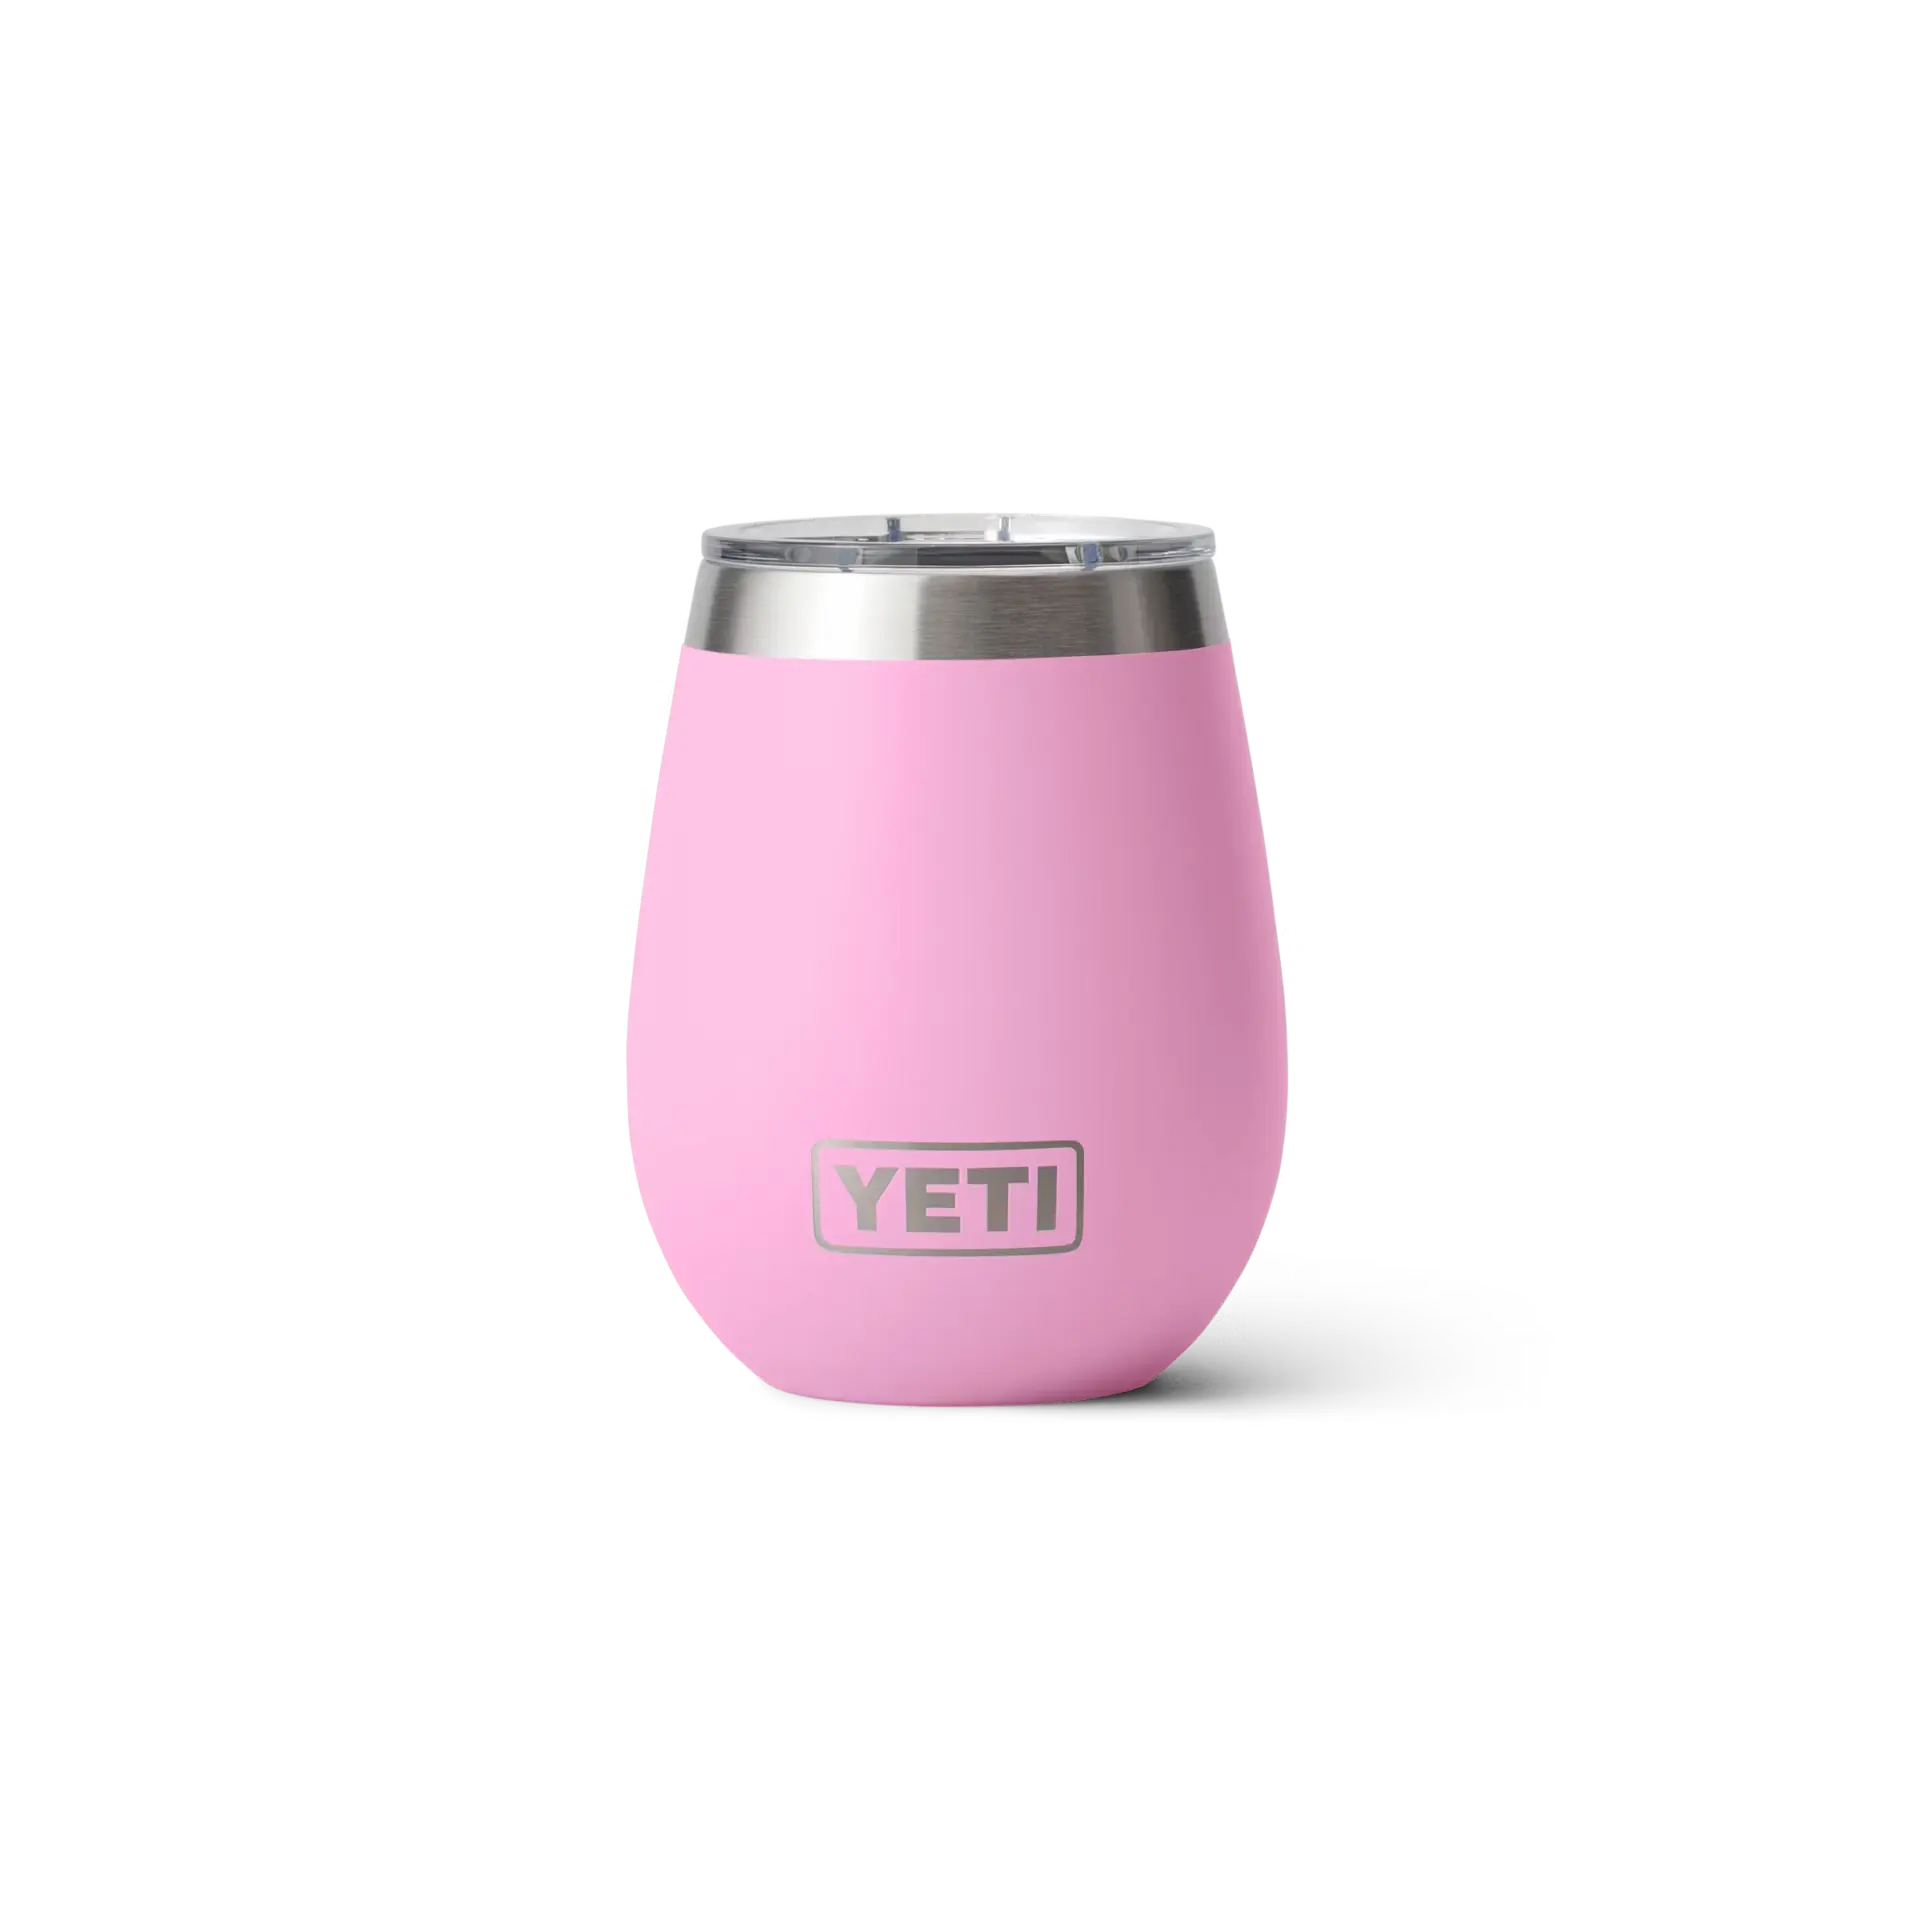 YETI Rambler 10 oz Wine Tumbler - Power Pink